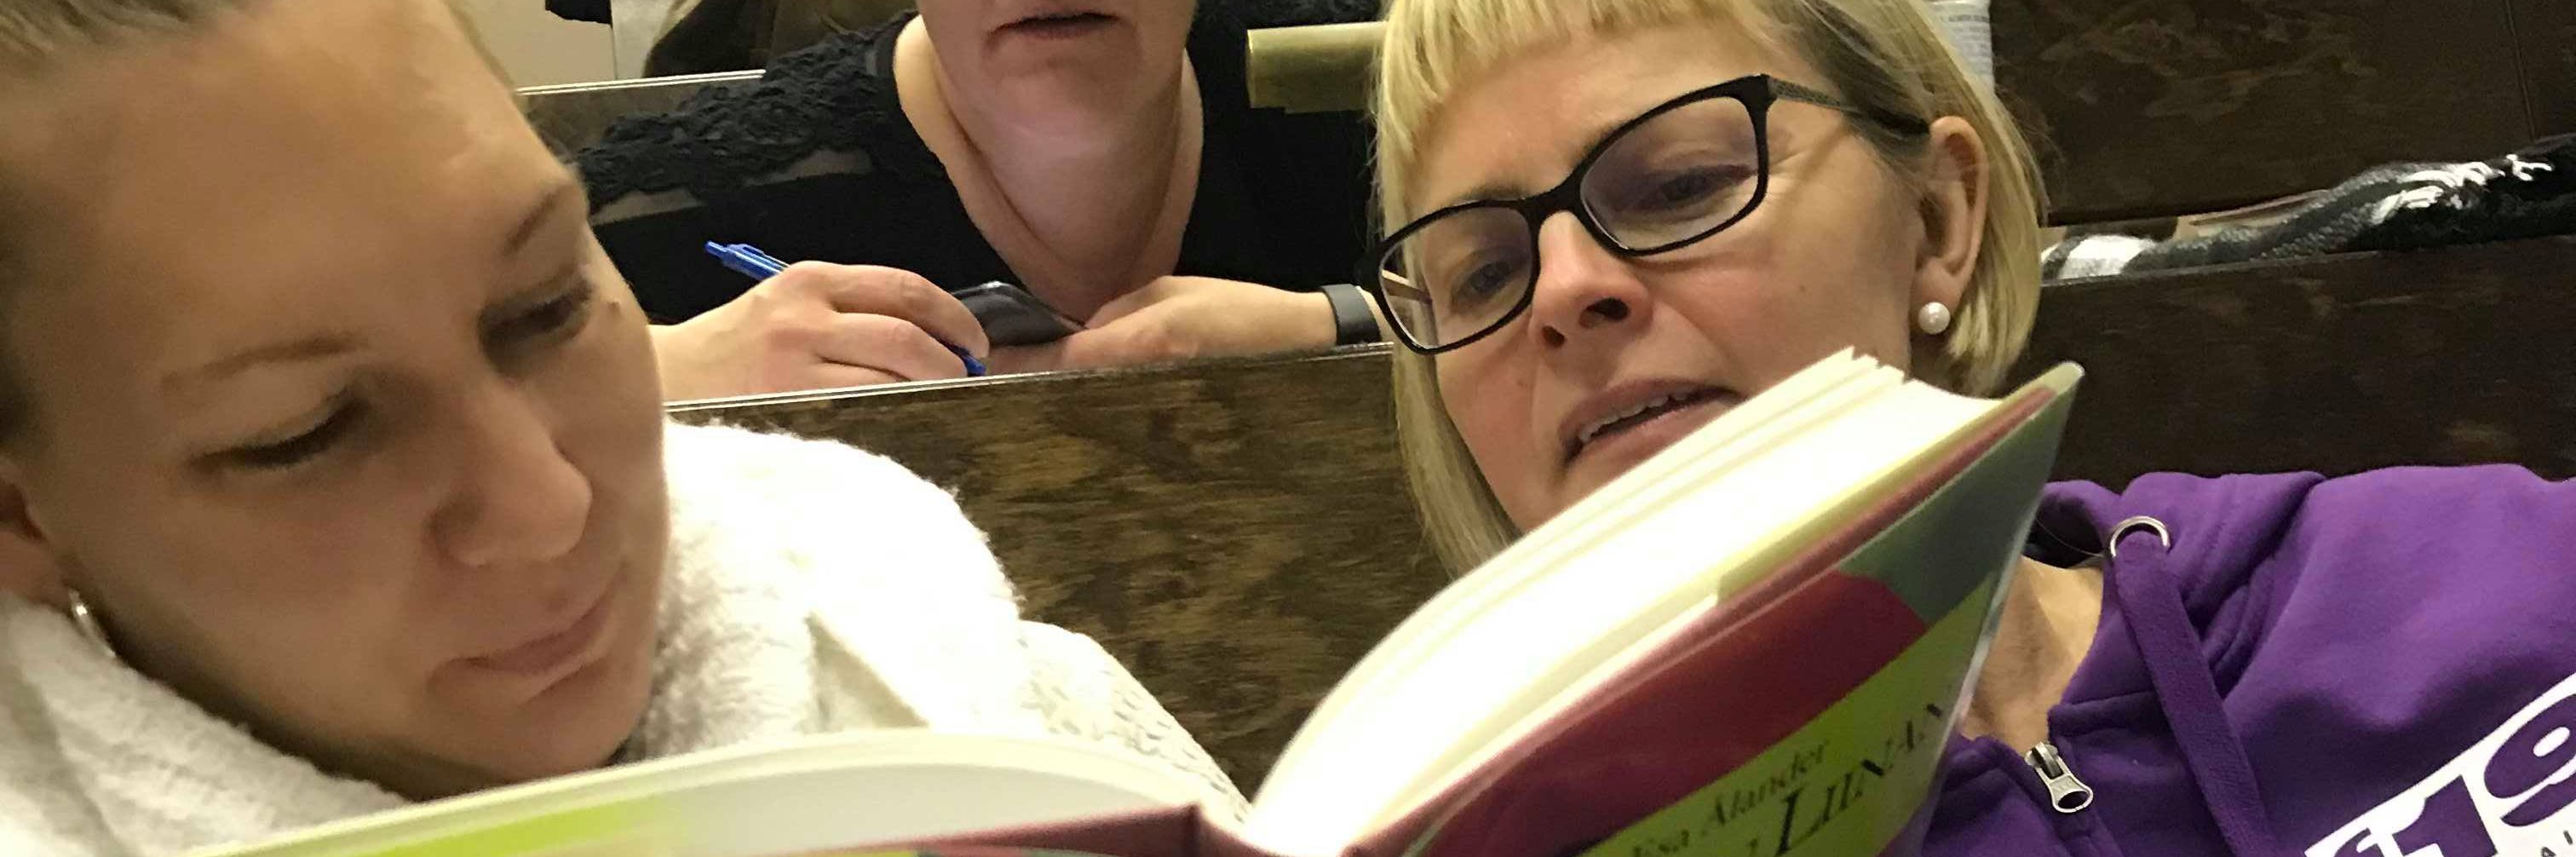 Kaksi henkilöä lukemassa Punaisen liinan lapset -kirjaa.